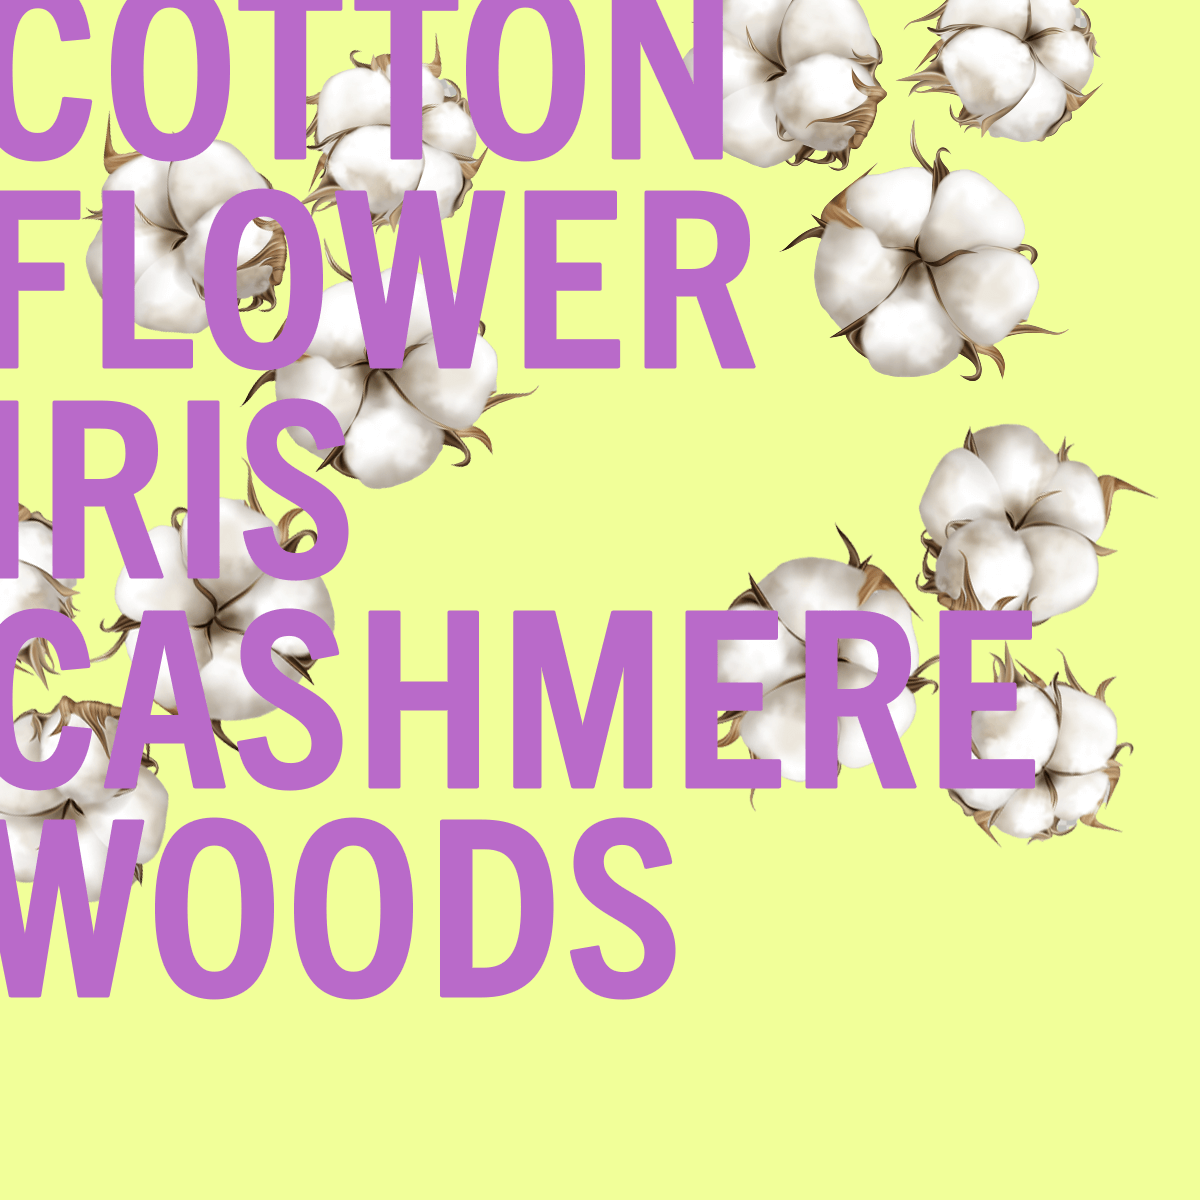 Edizione limitata del profumo Cotton Flower 100ml